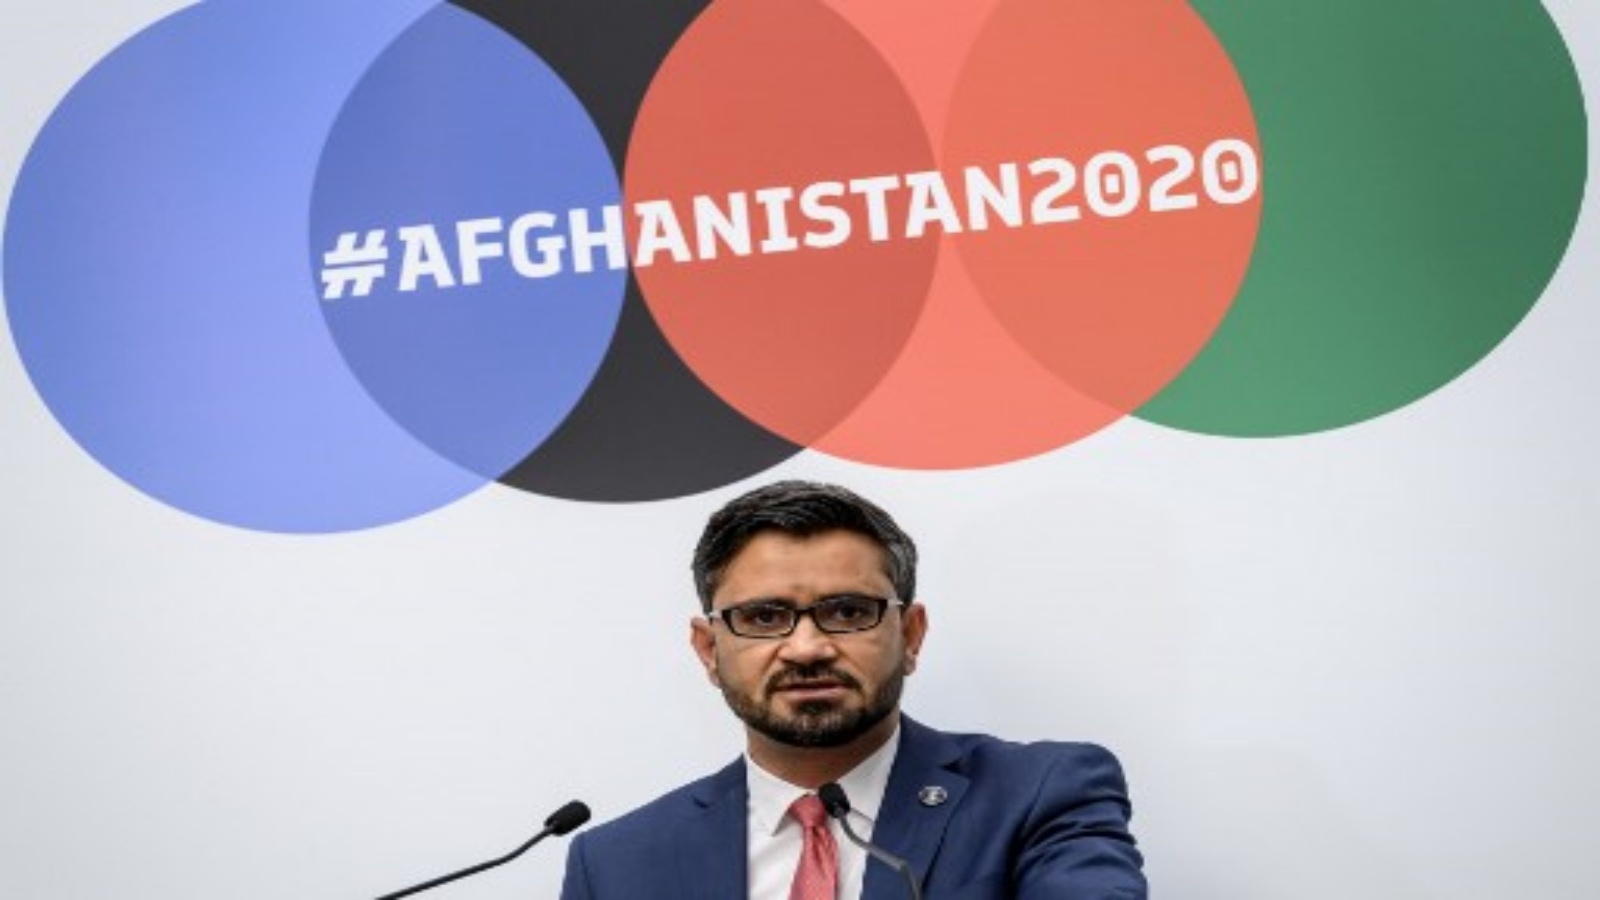 نائب وزير المالية الأفغاني عبد الحبيب زدران يلقي بيانًا خلال مؤتمر المانحين لأفغانستان 2020 الذي استضافته الأمم المتحدة في جنيف في 24 نوفمبر 2020.